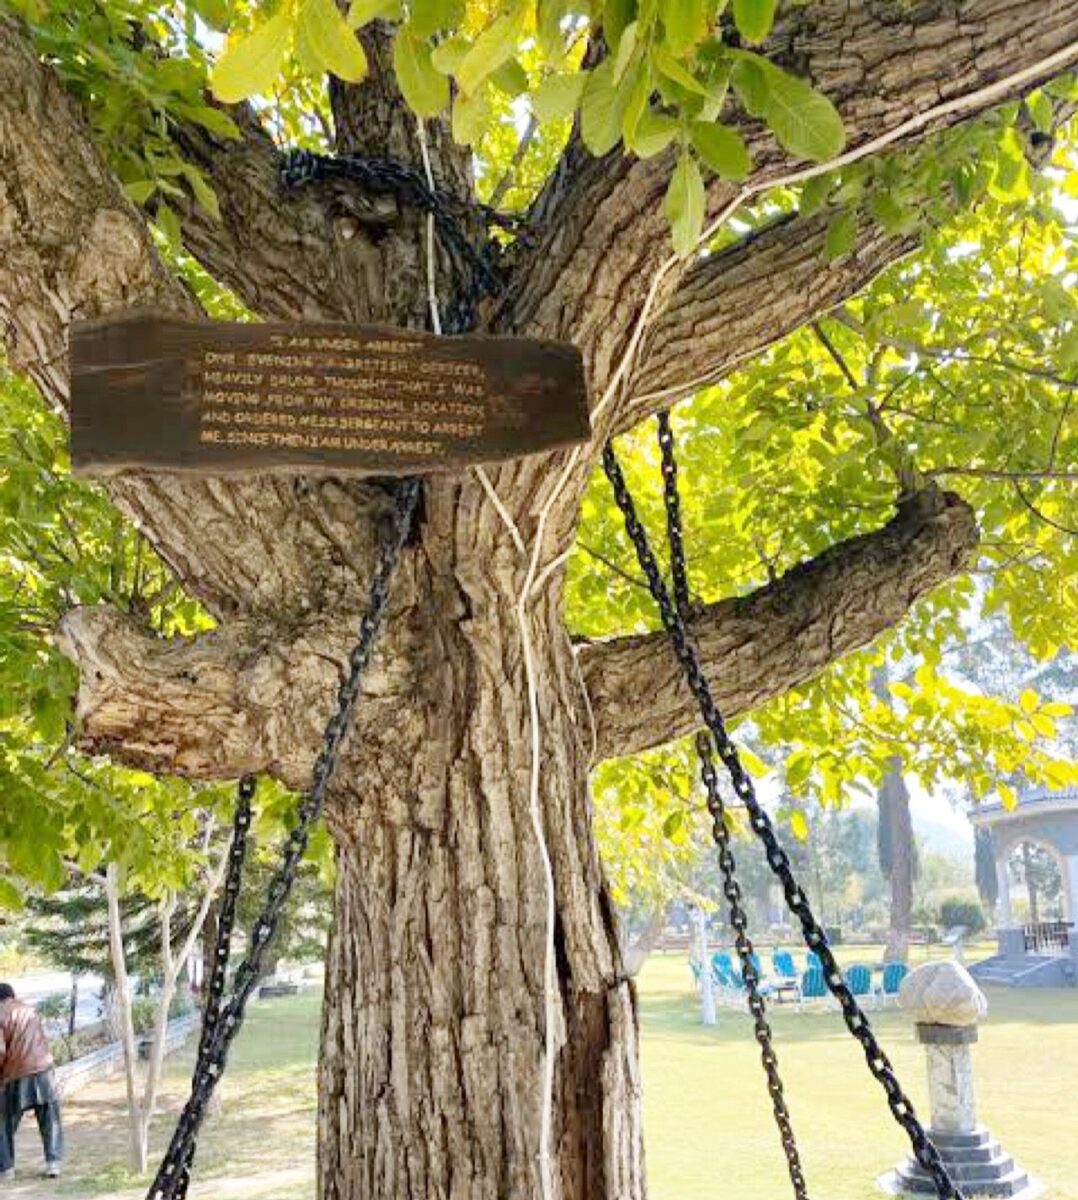 125 साल से 'गिरफ्तार' है ये पेड़, पाकिस्तान में काट रहा है सजा, जानिए इस बेगुनाह पेड़ की कहानी